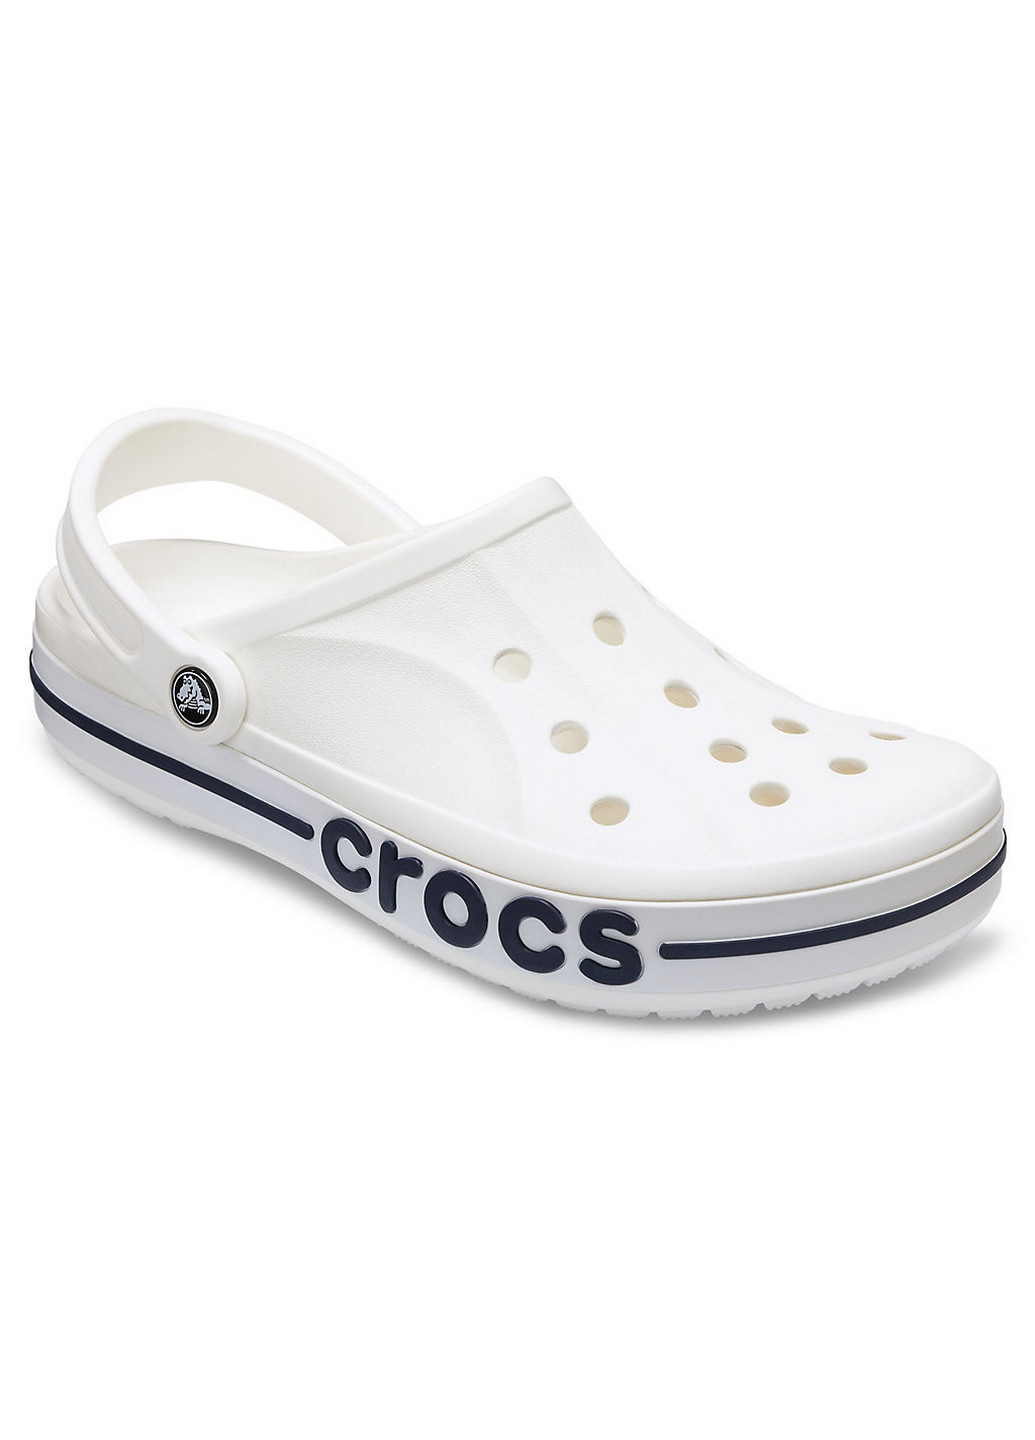 Белые сабо крокс Crocs